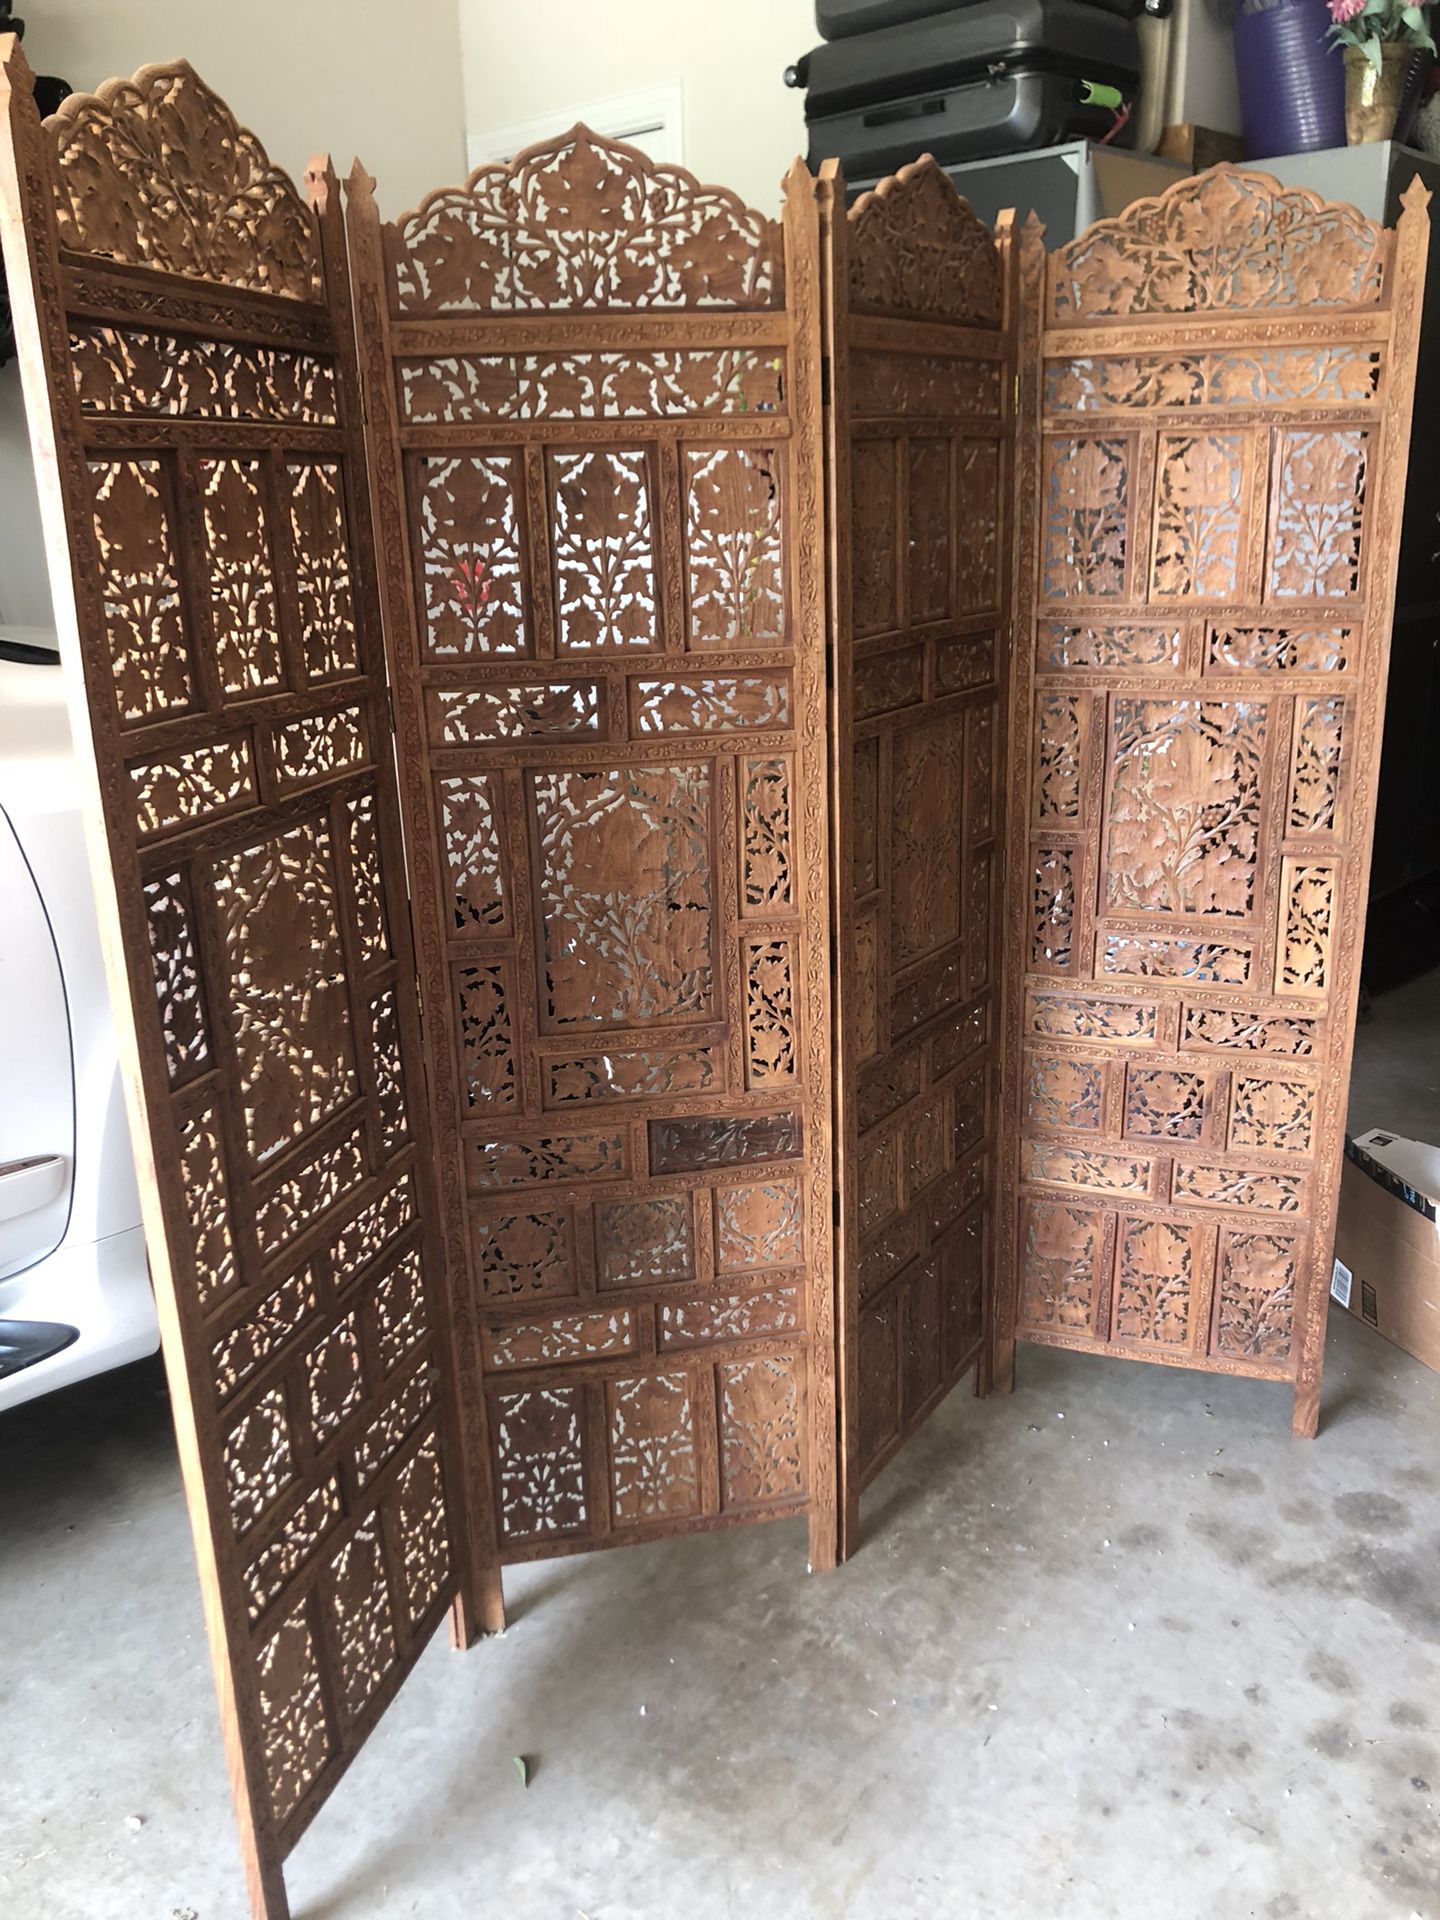 Antique hand carved teak wood room divider...4 20” x 6’ panels